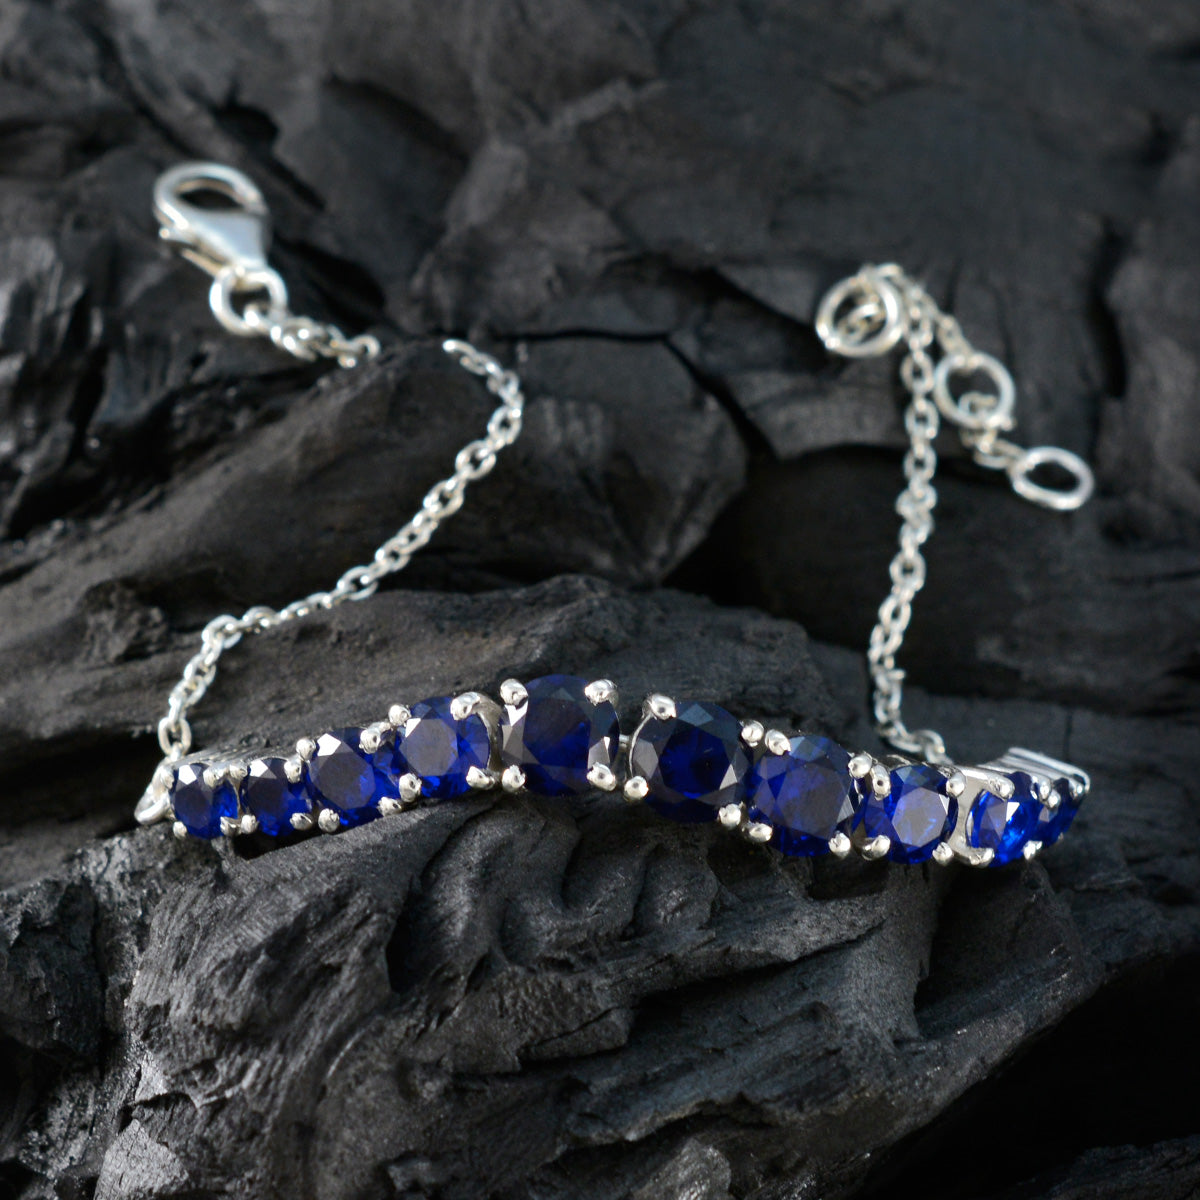 Riyo Bestes 925er-Sterlingsilber-Armband für Mädchen, blaues Supphire-CZ-Armband, Krappenfassung-Armband, Angelhaken-Tennisarmband, L, Größe 15,2–21,6 cm.